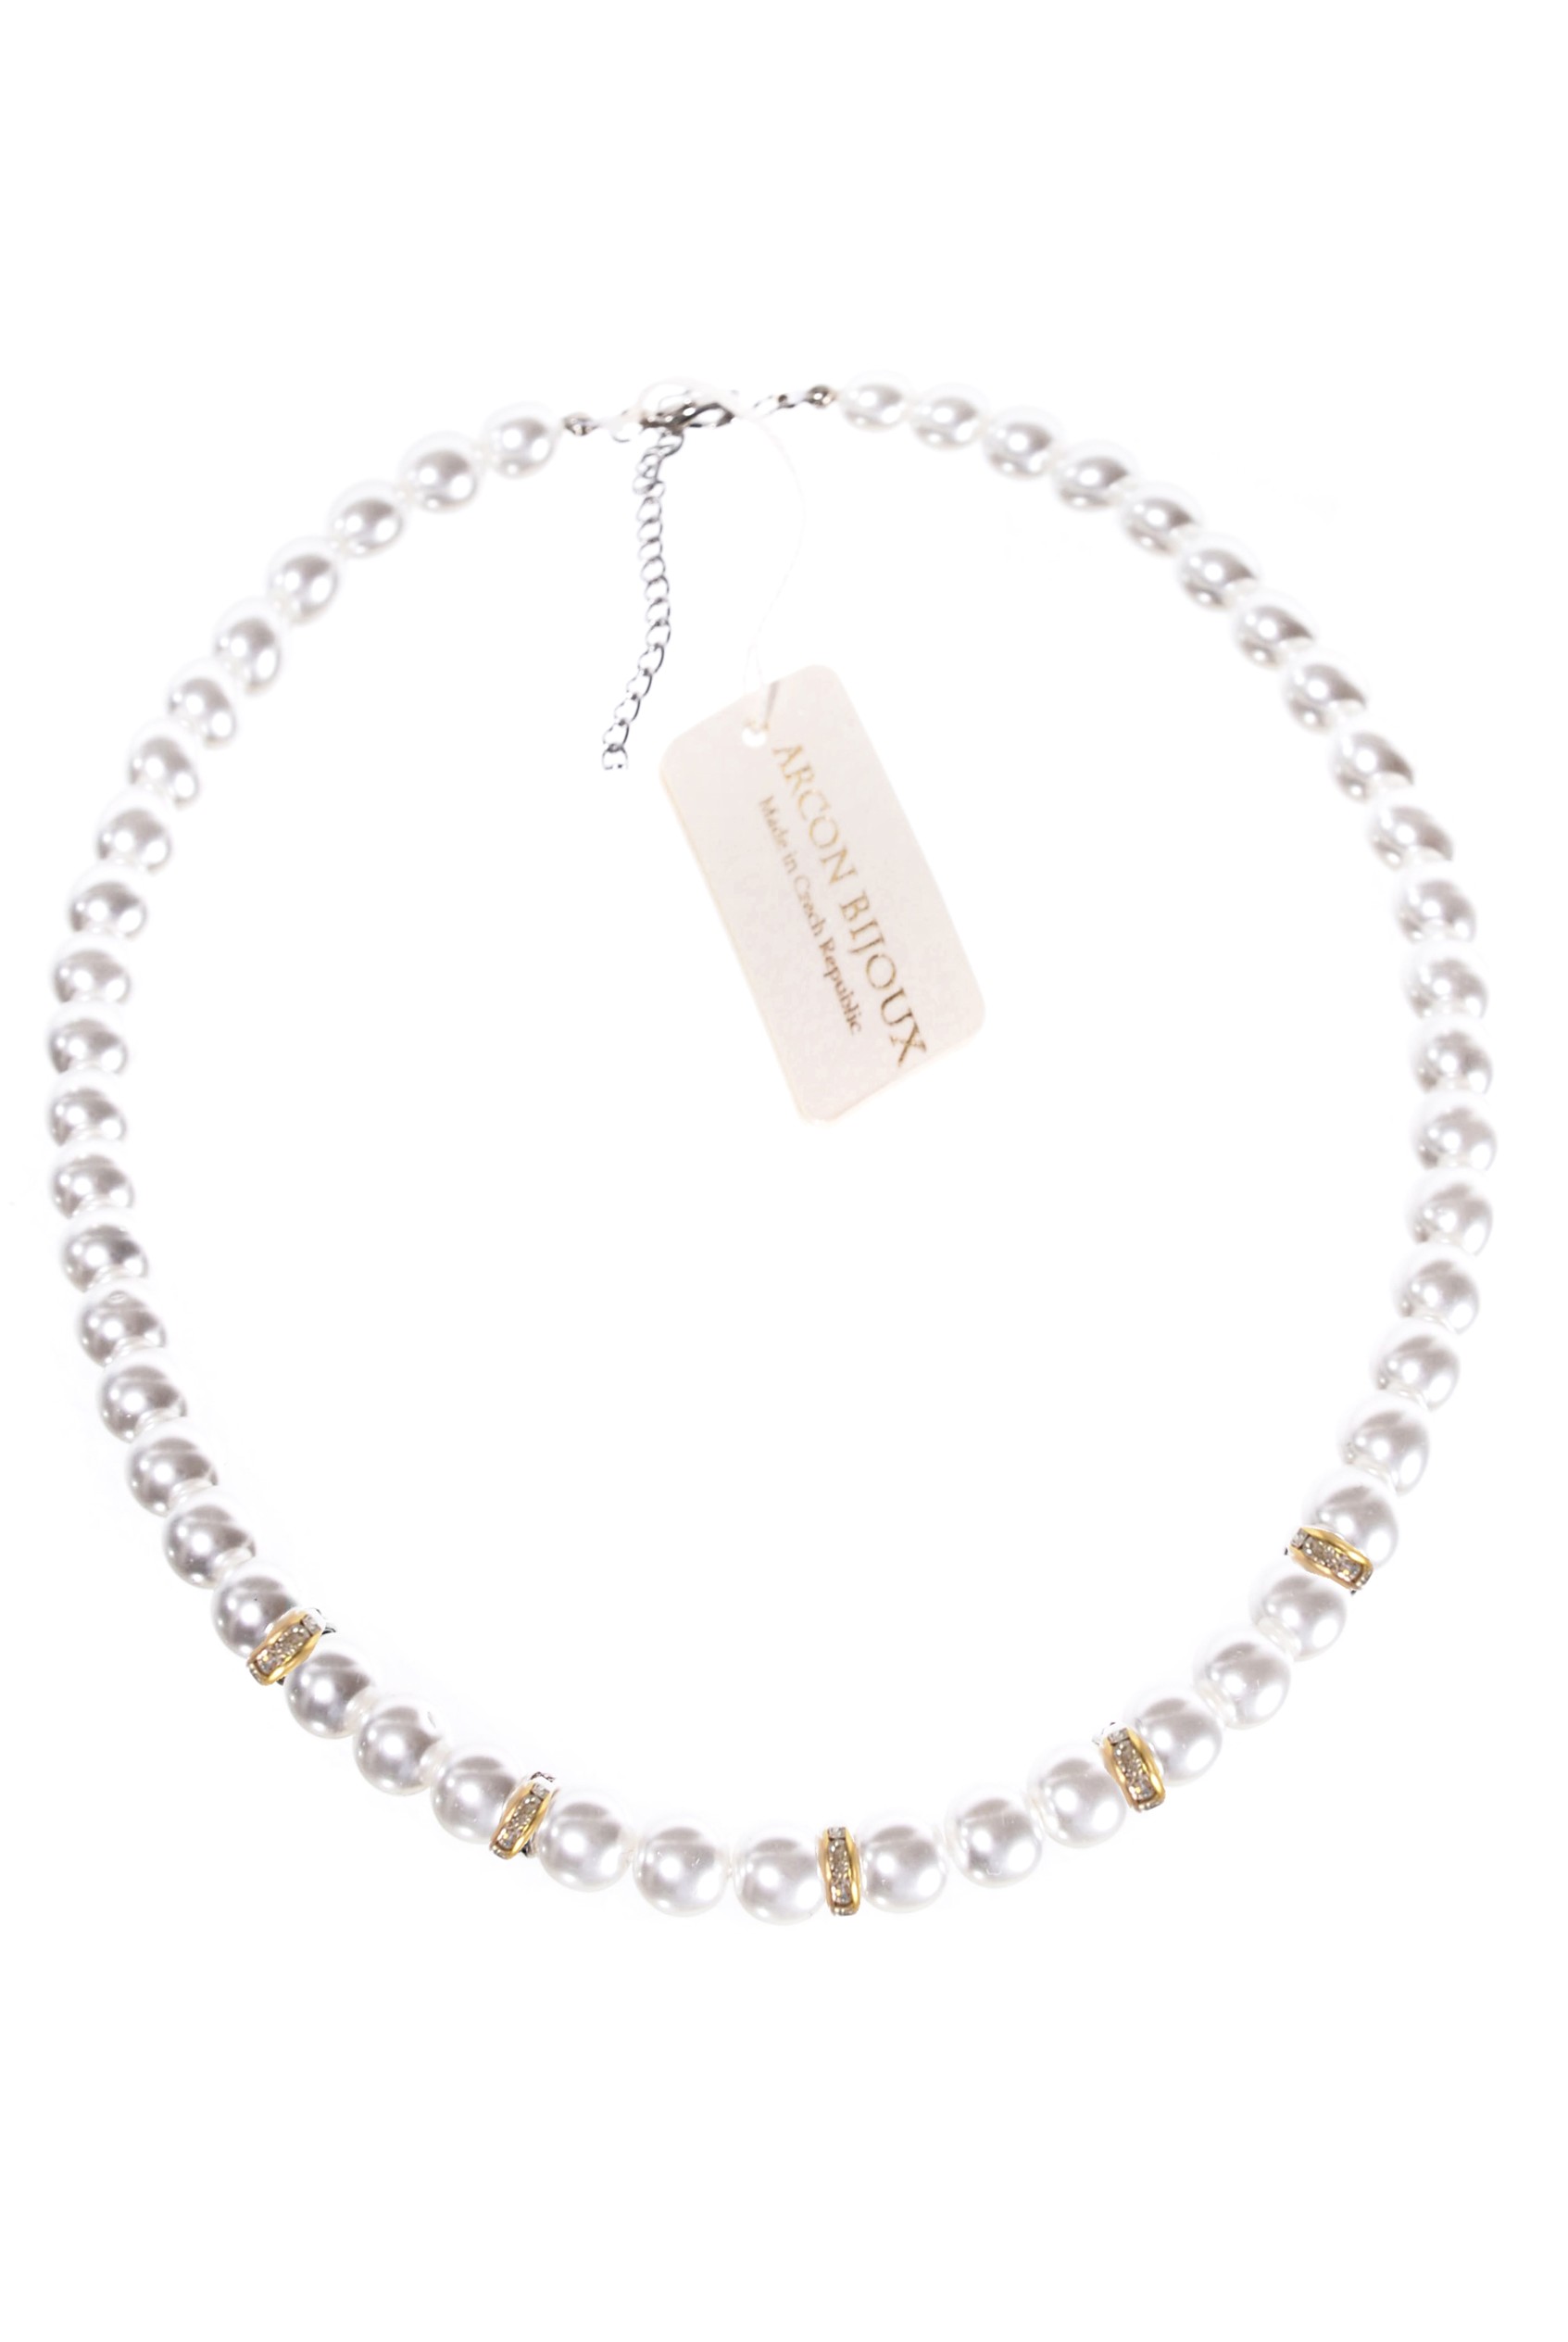  Bílý náhrdelník z perliček